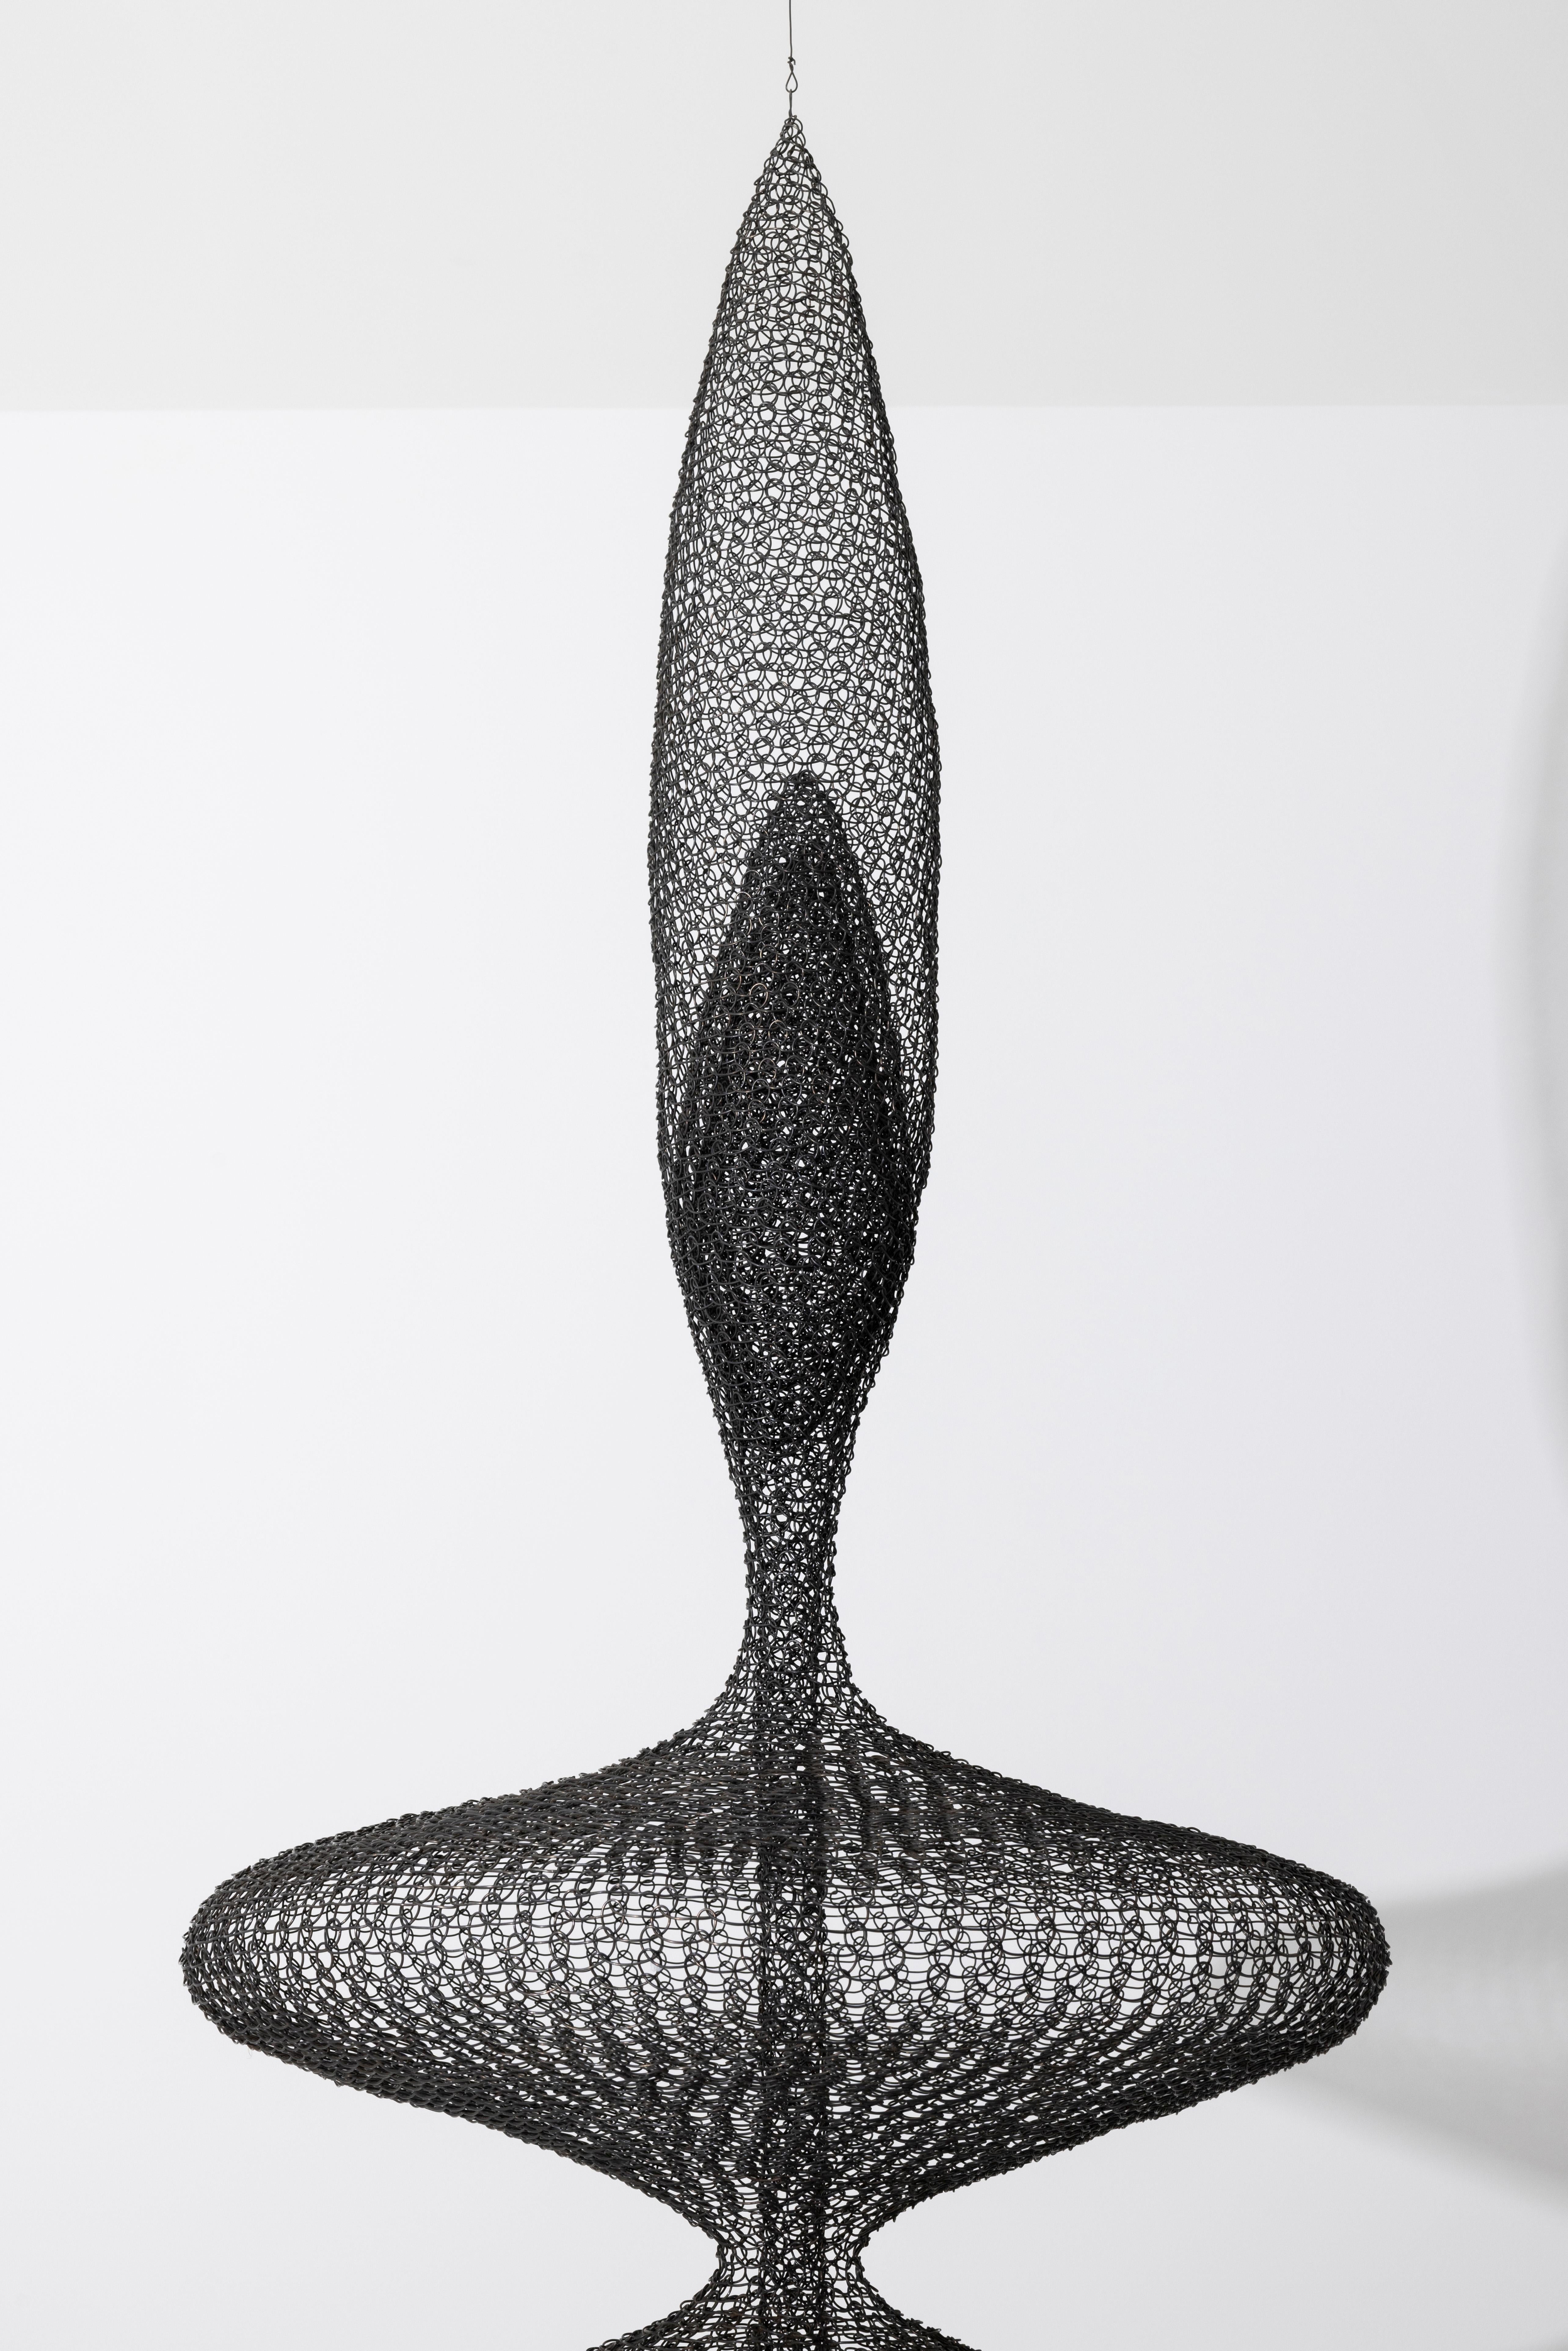 Organique Sculpture contemporaine suspendue en fil de fer tissé à la main, France en vente